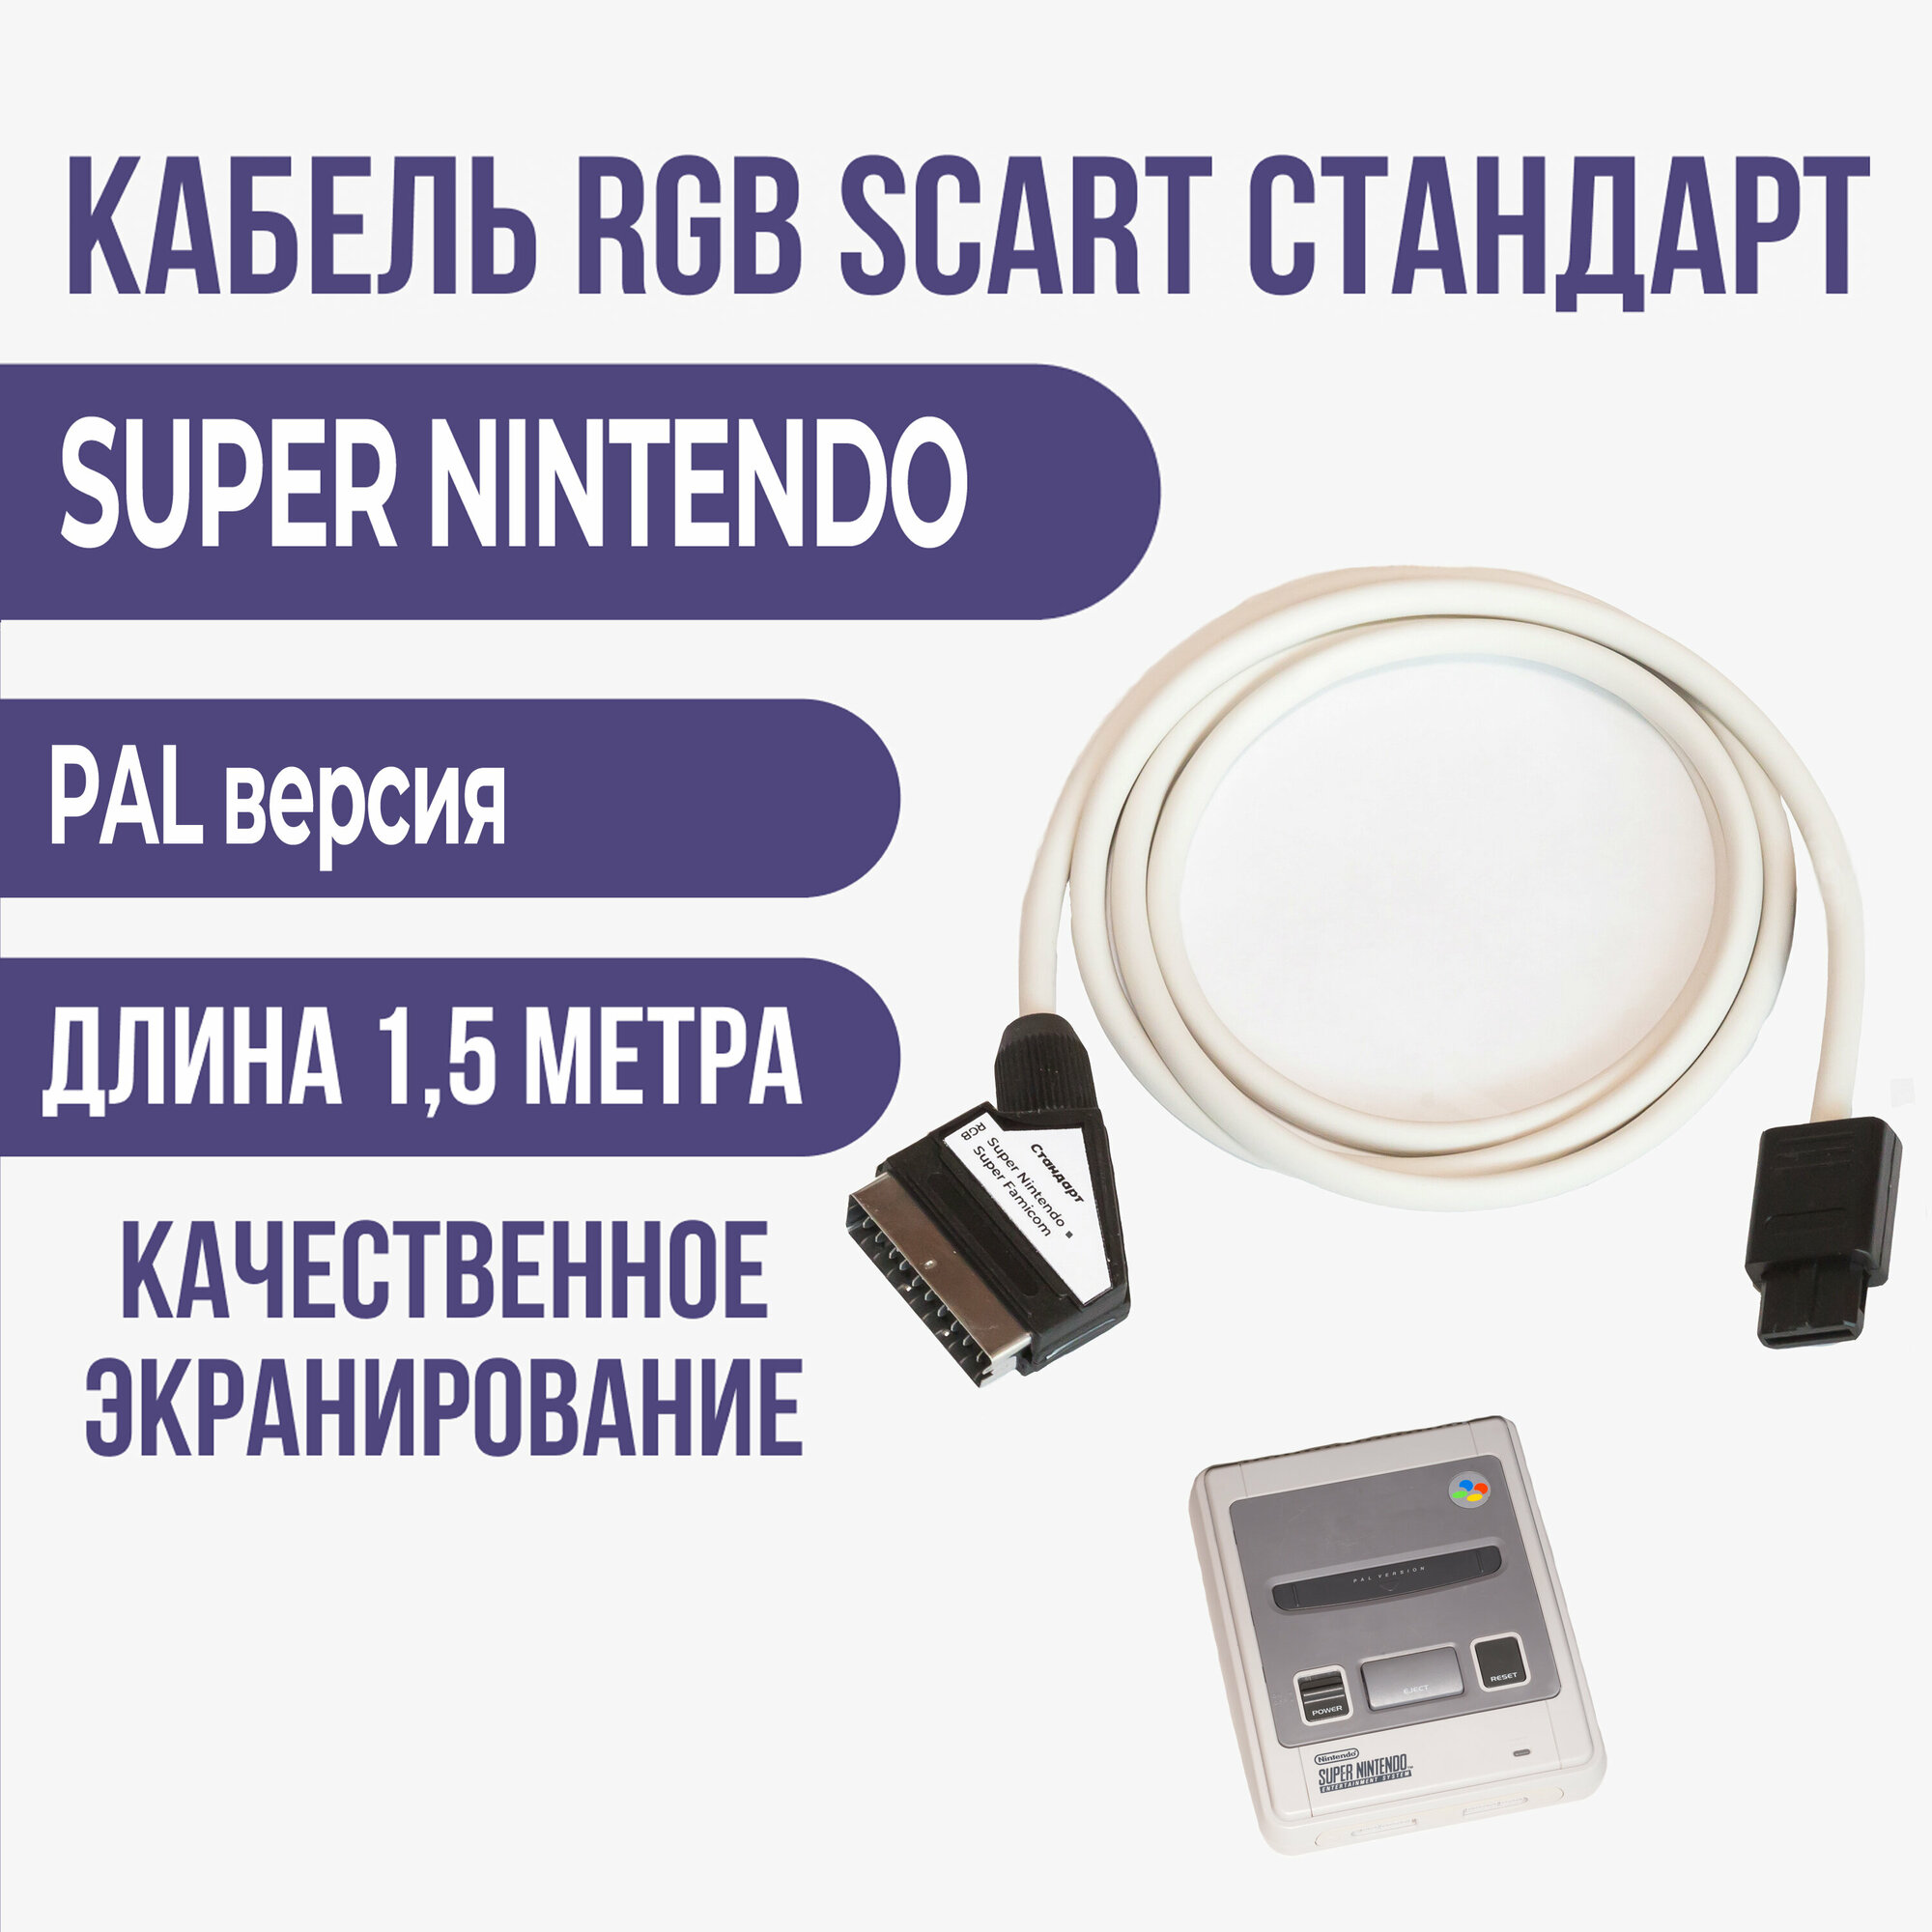 Видео - кабель RGB-SCART стандарт для SUPER NINTENDO